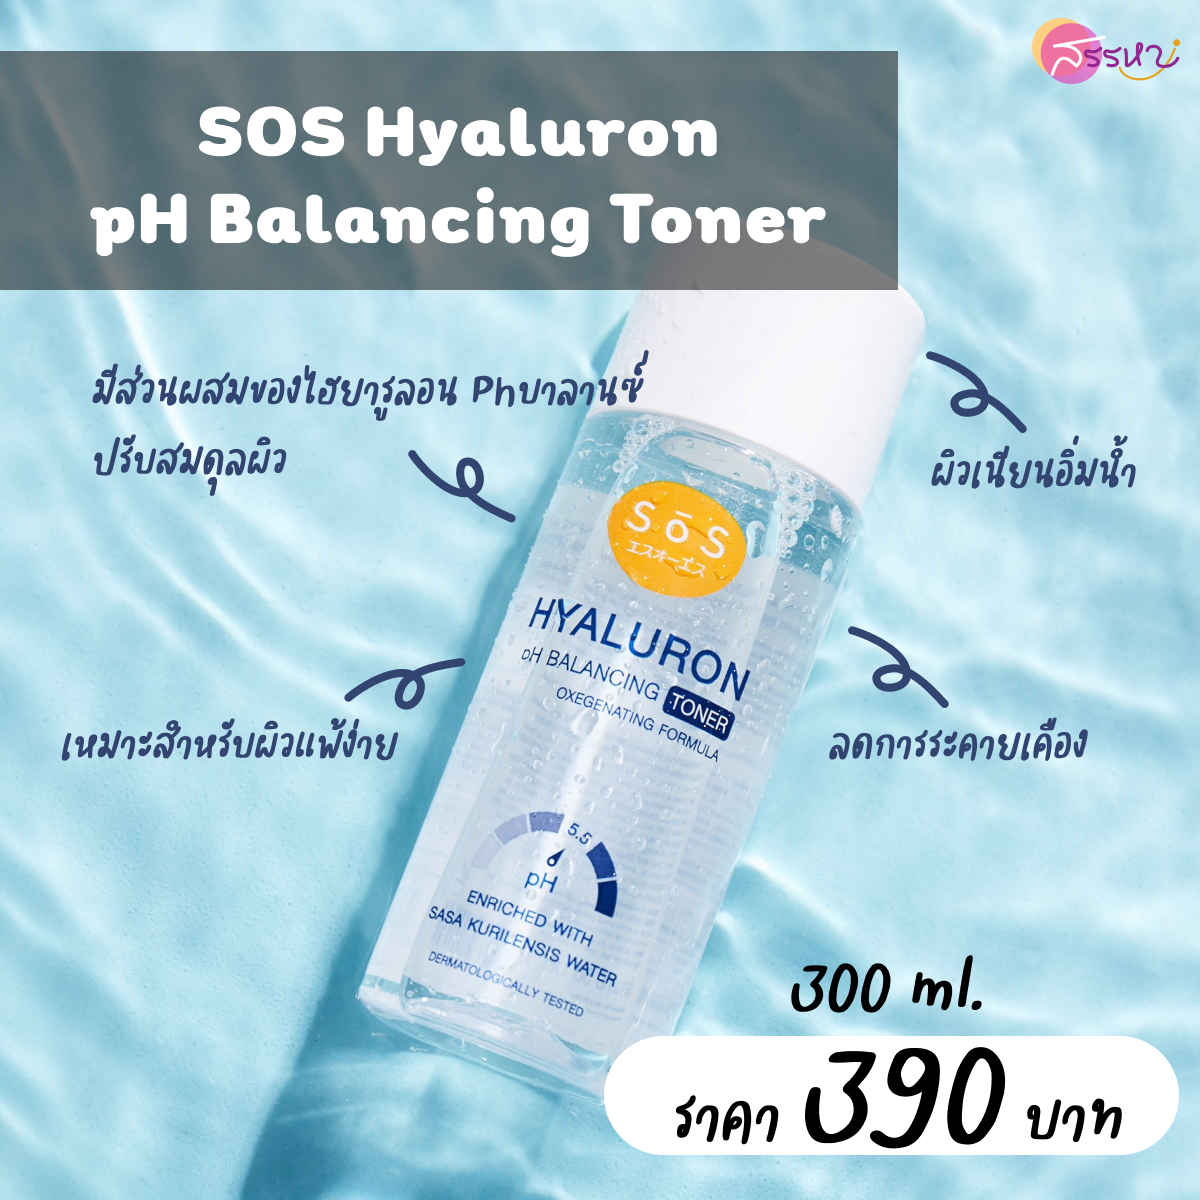 SOS Hyaluron pH Balancing Toner